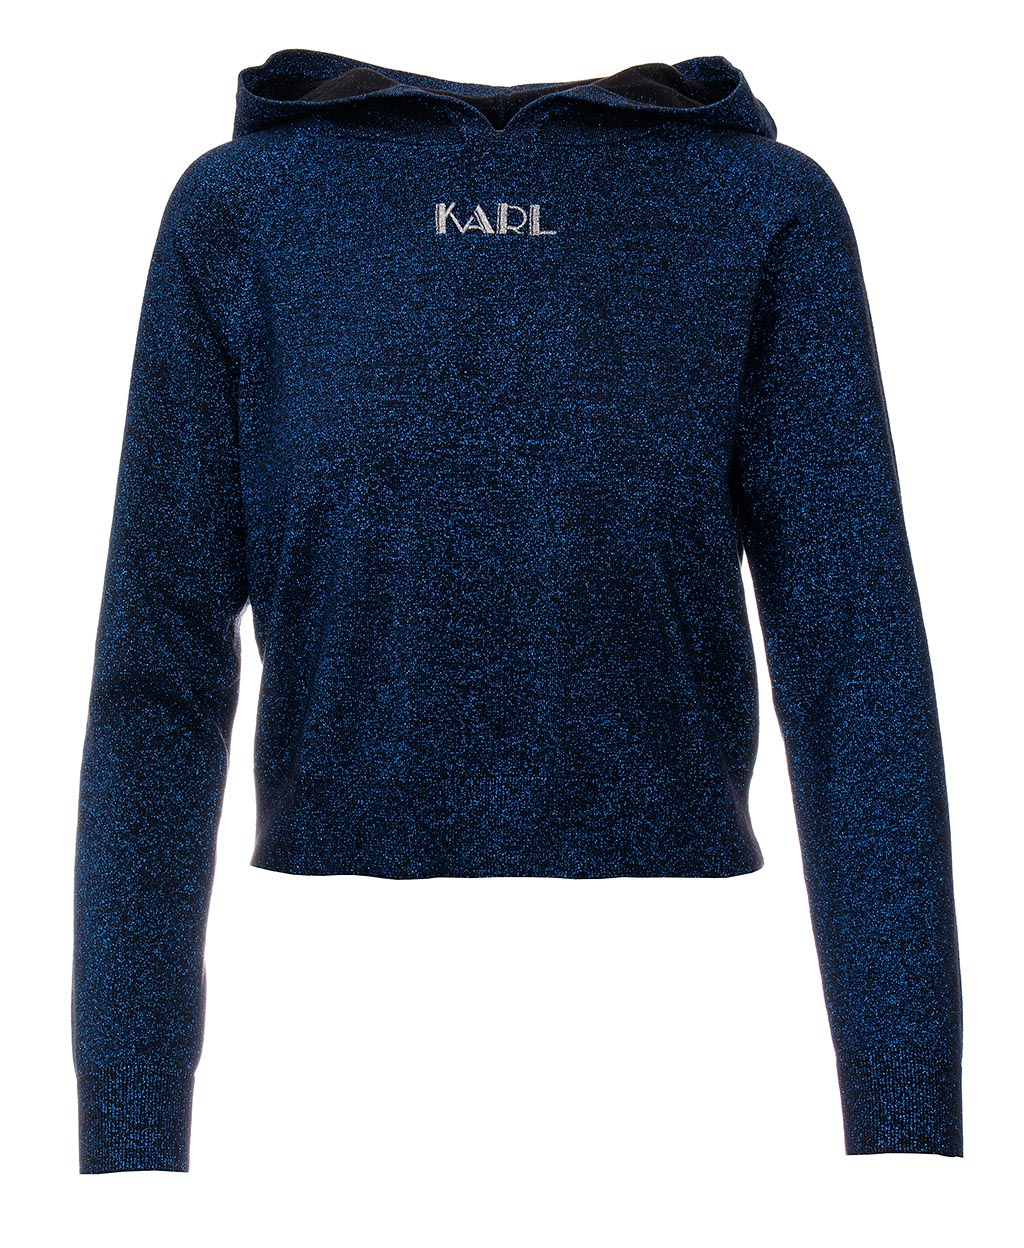 Karl Lagerfeld dámský mikinový svetr s kapucí Sparkle Hooded modrý Velikost: XS